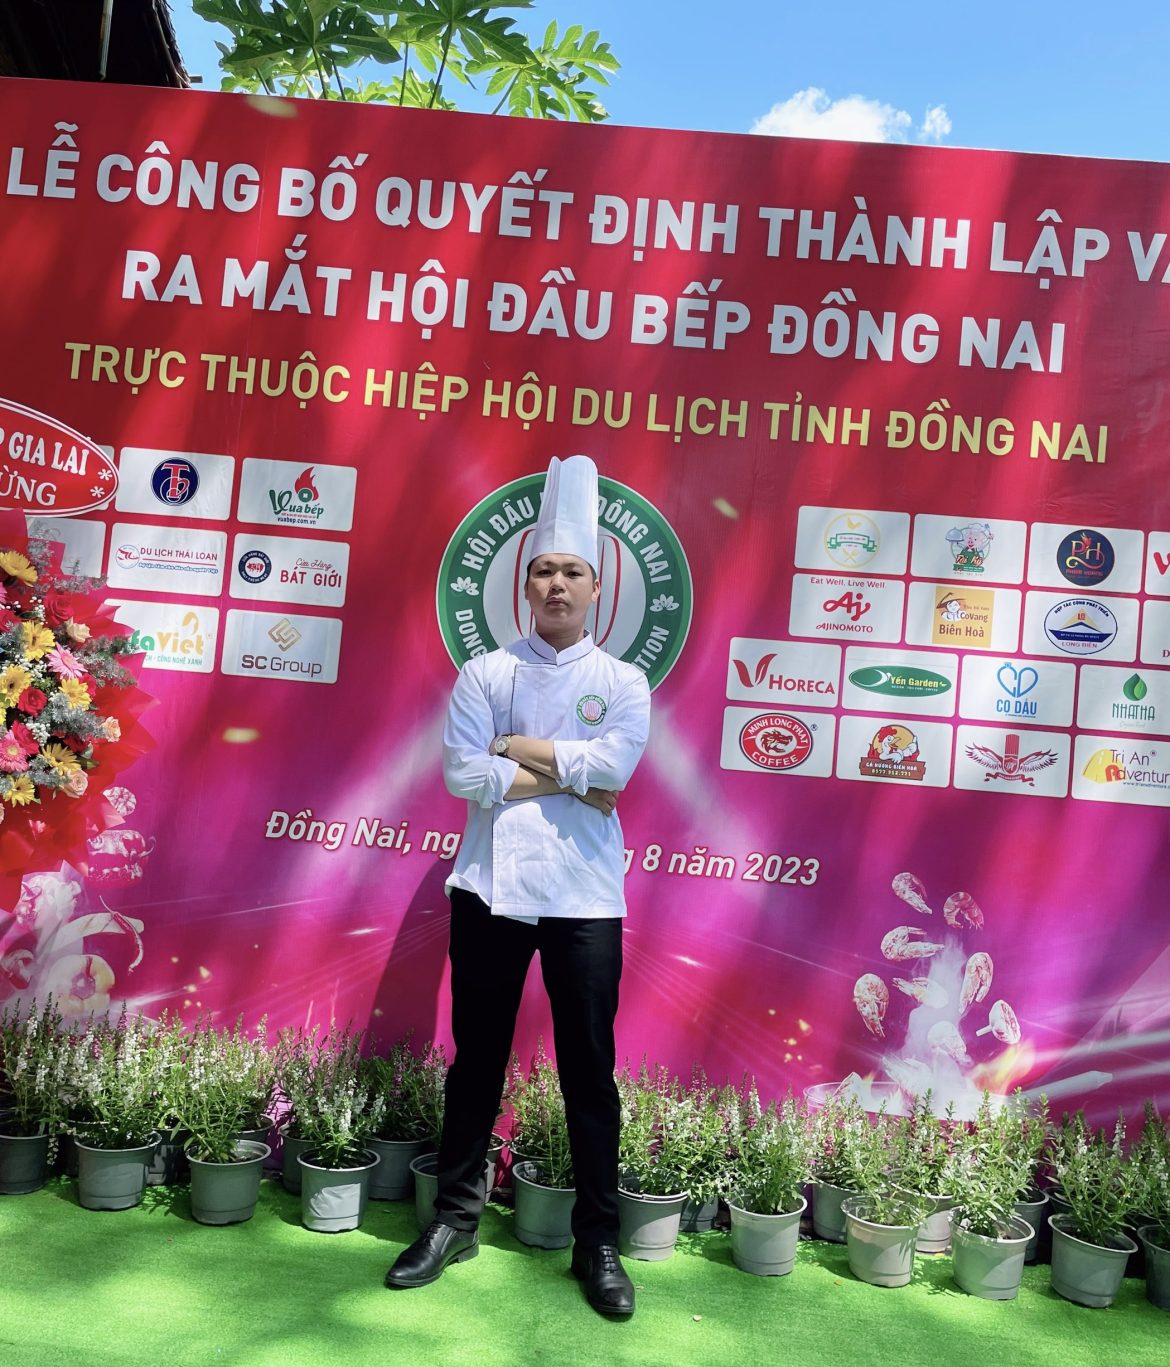 “Vị Đầu Bếp Tài Năng Và Thương Hiệu Hải Sản Uy Tín: Hành Trình Kinh Doanh của Huỳnh Hữu Thừa”